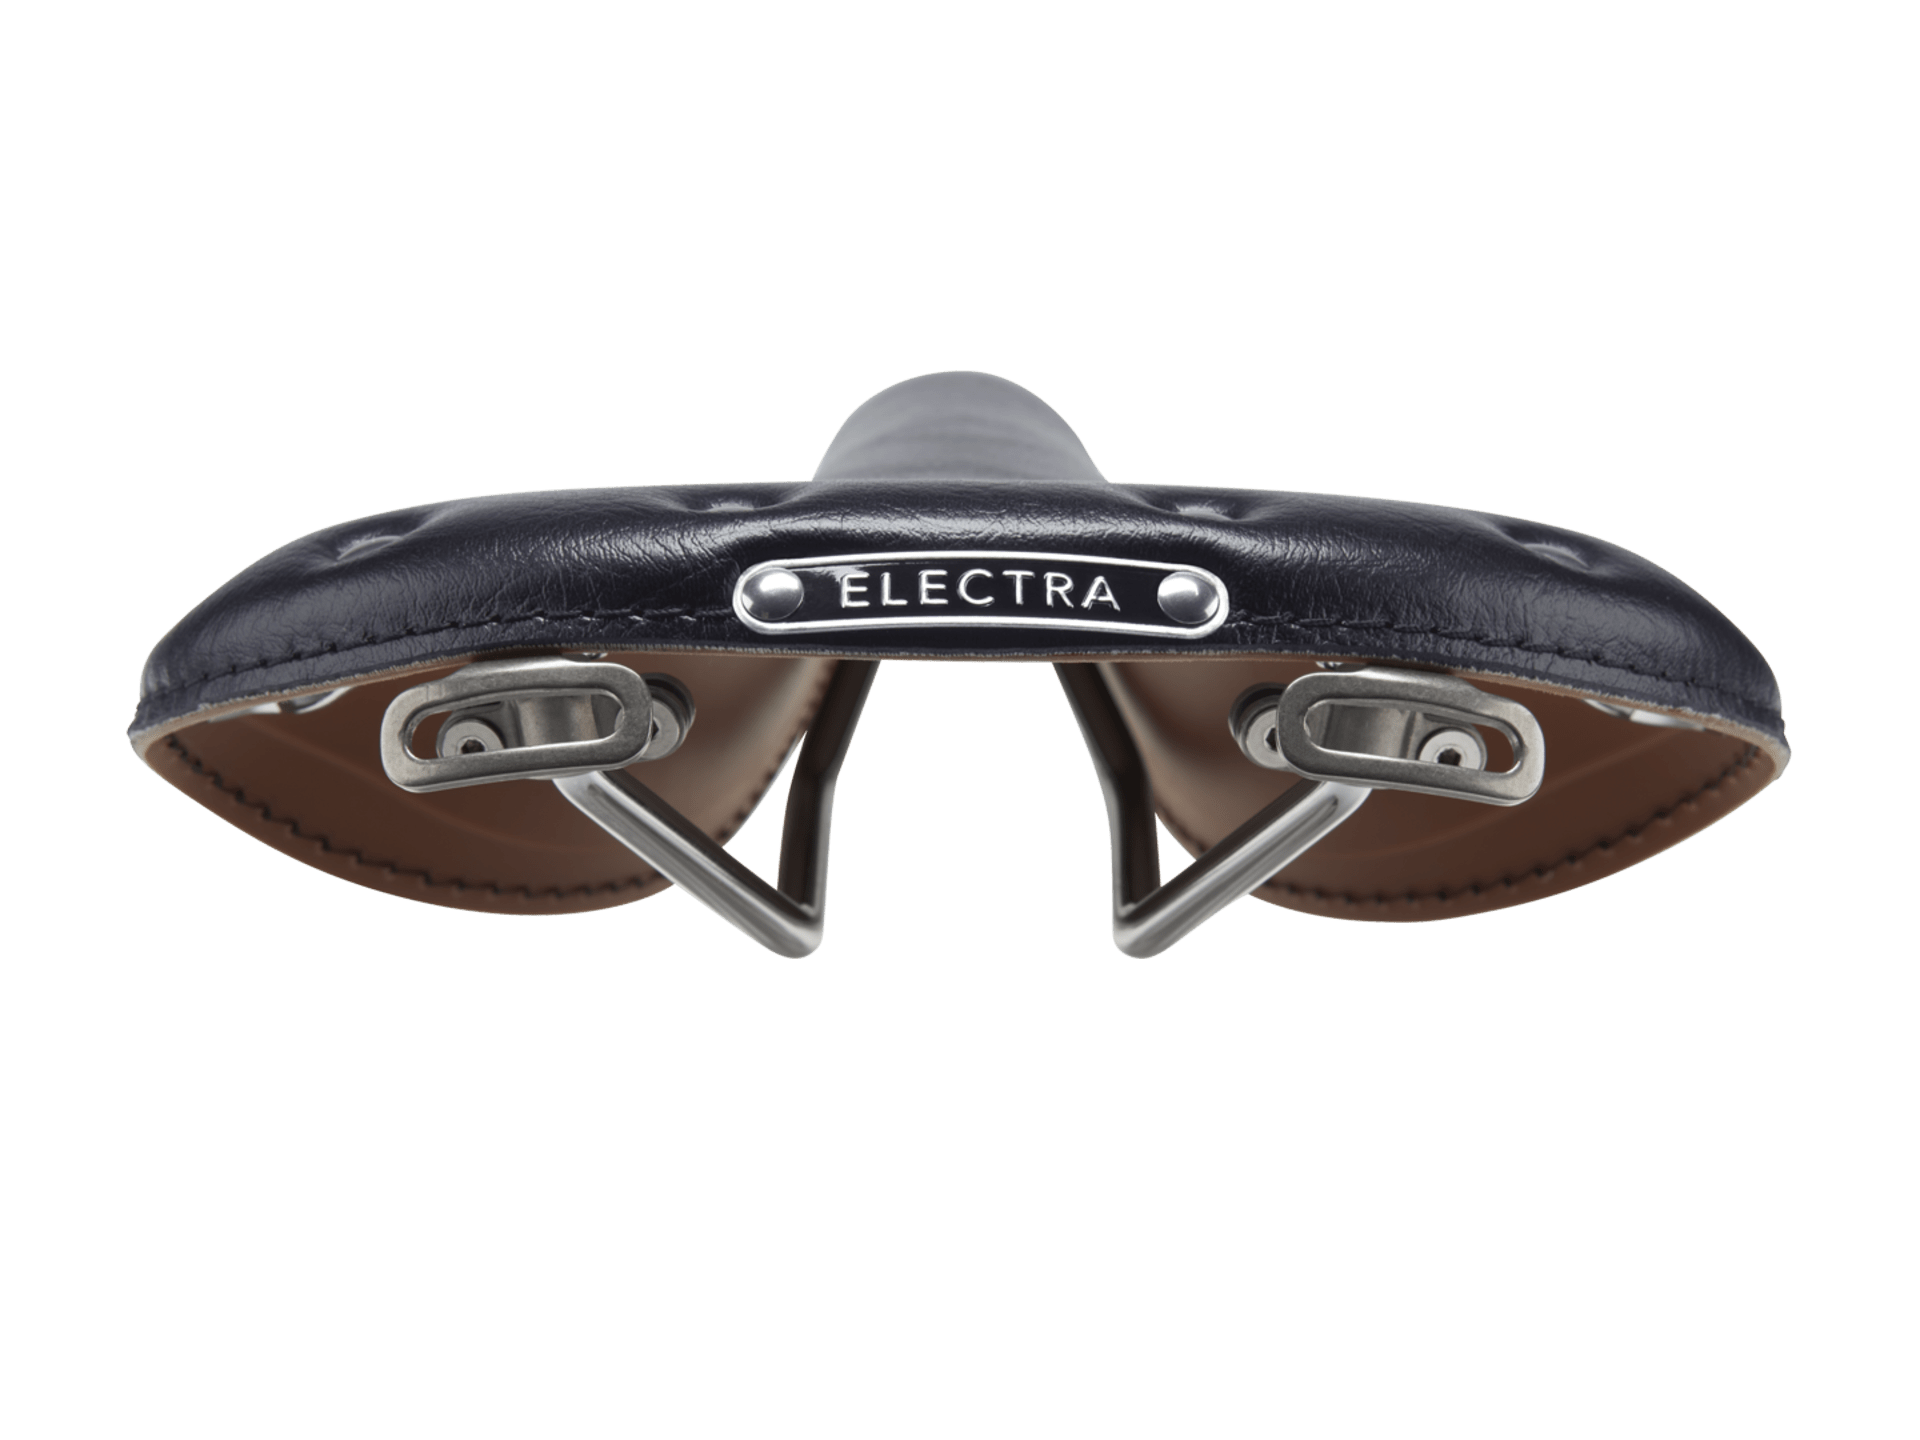 Electra Classic Faux Leather Bike Saddle